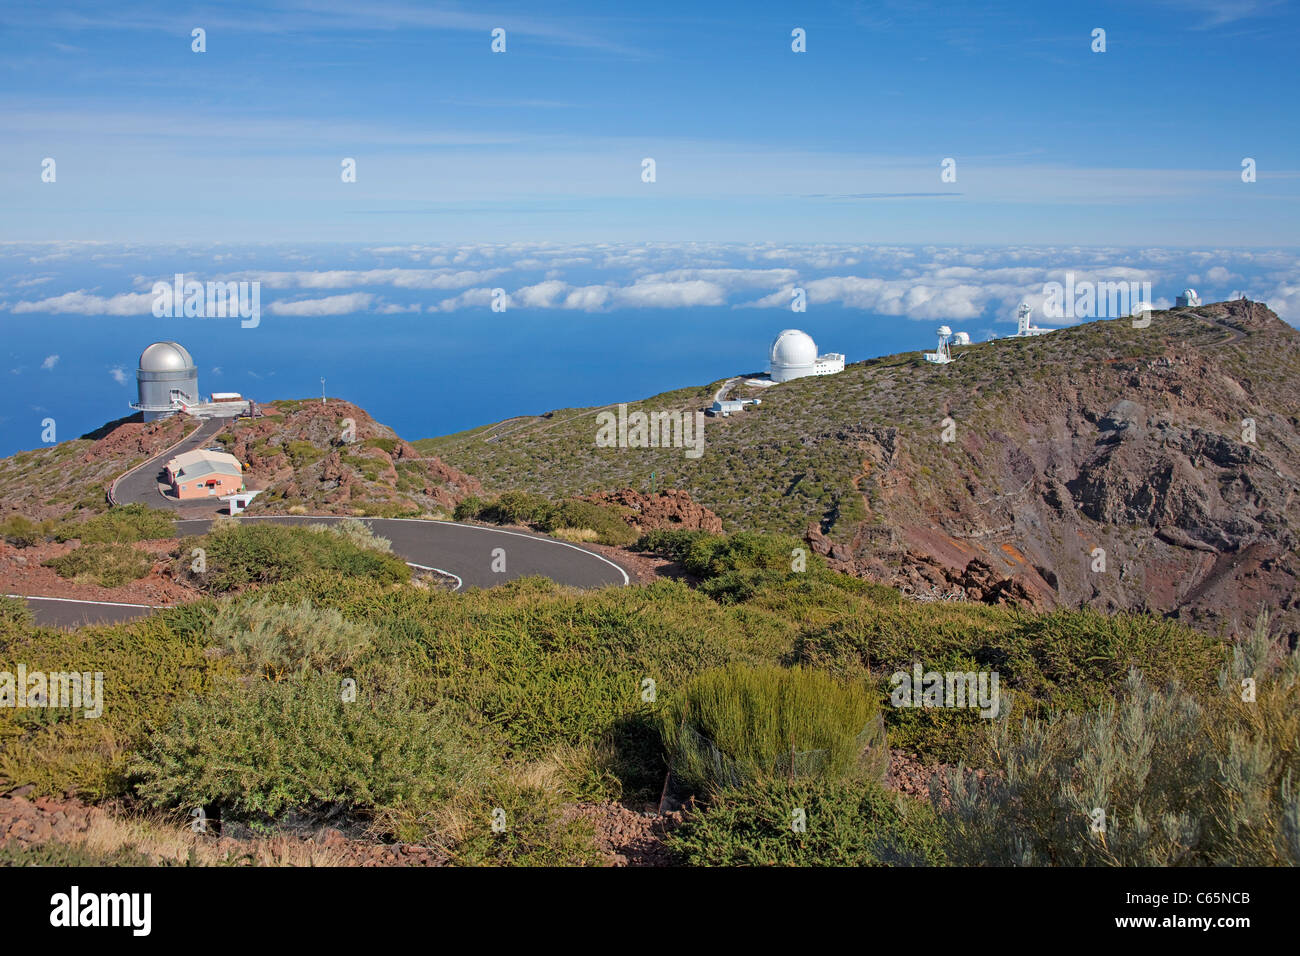 Astronomical observatory on top of Roque de los Muchachos, Parque Nacional de la Caldera de Taburiente, La Palma island, Canary islands, Spain, Europe Stock Photo